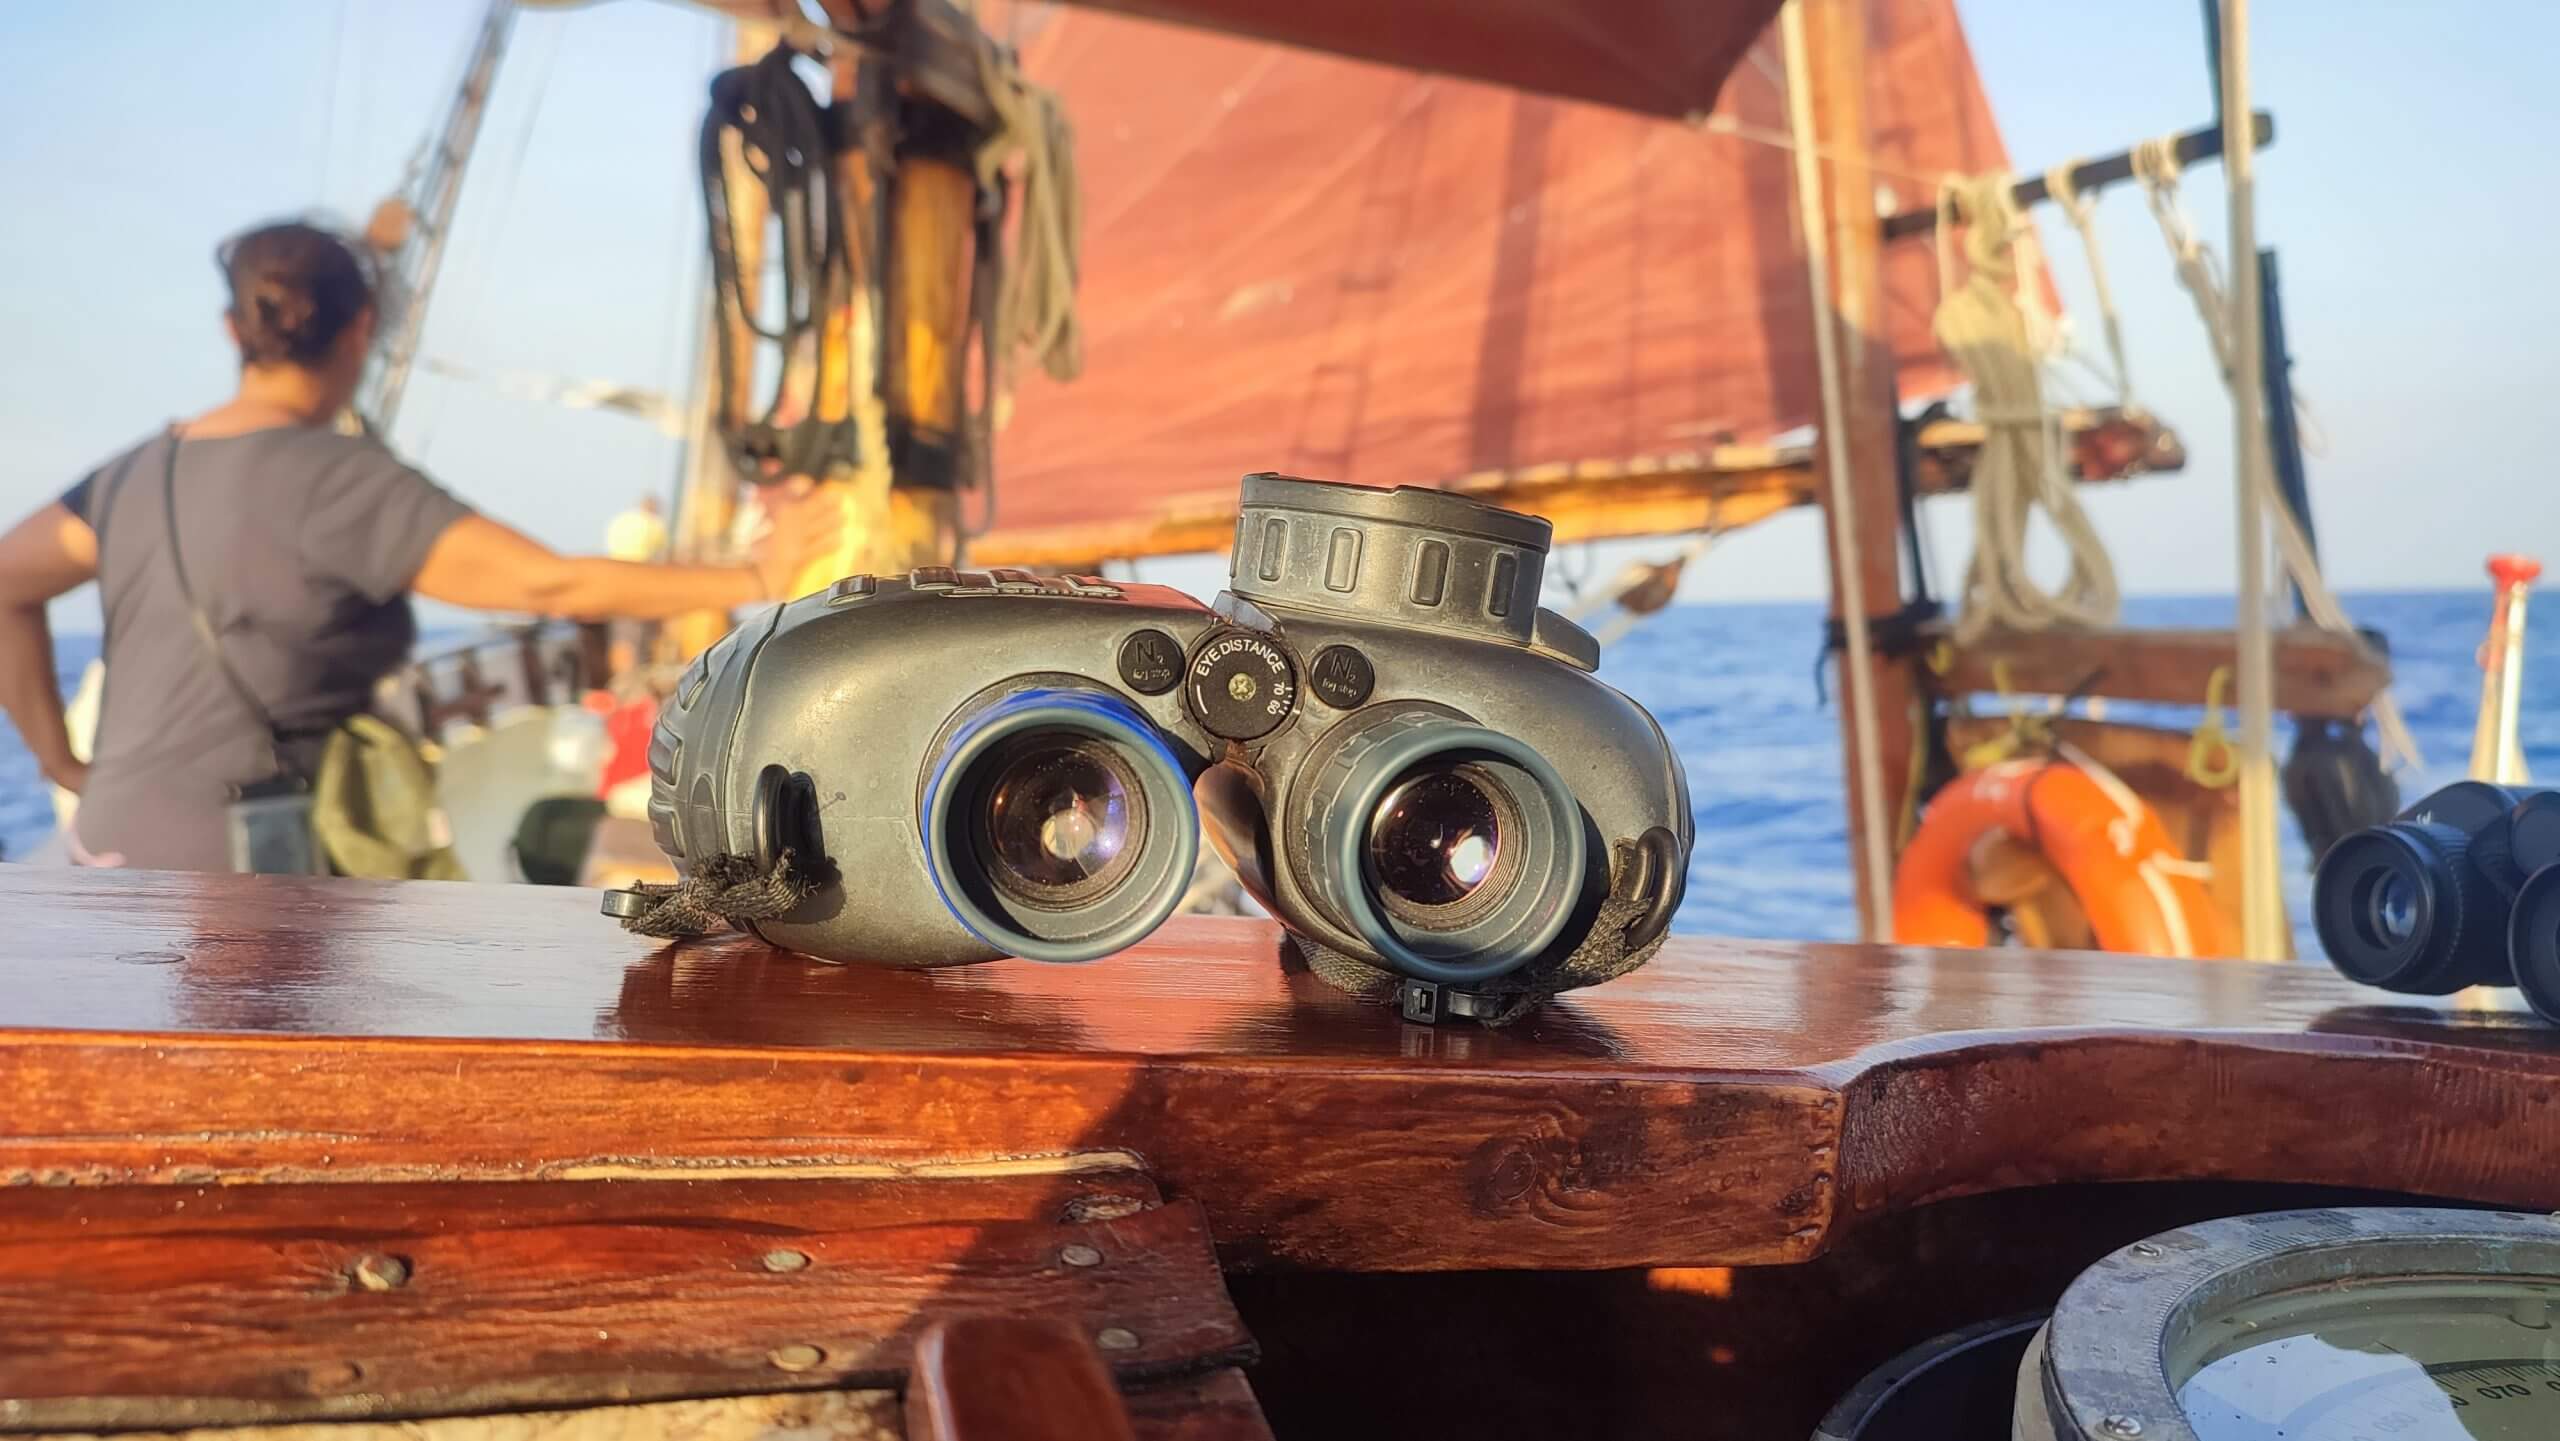 Binoculars on board